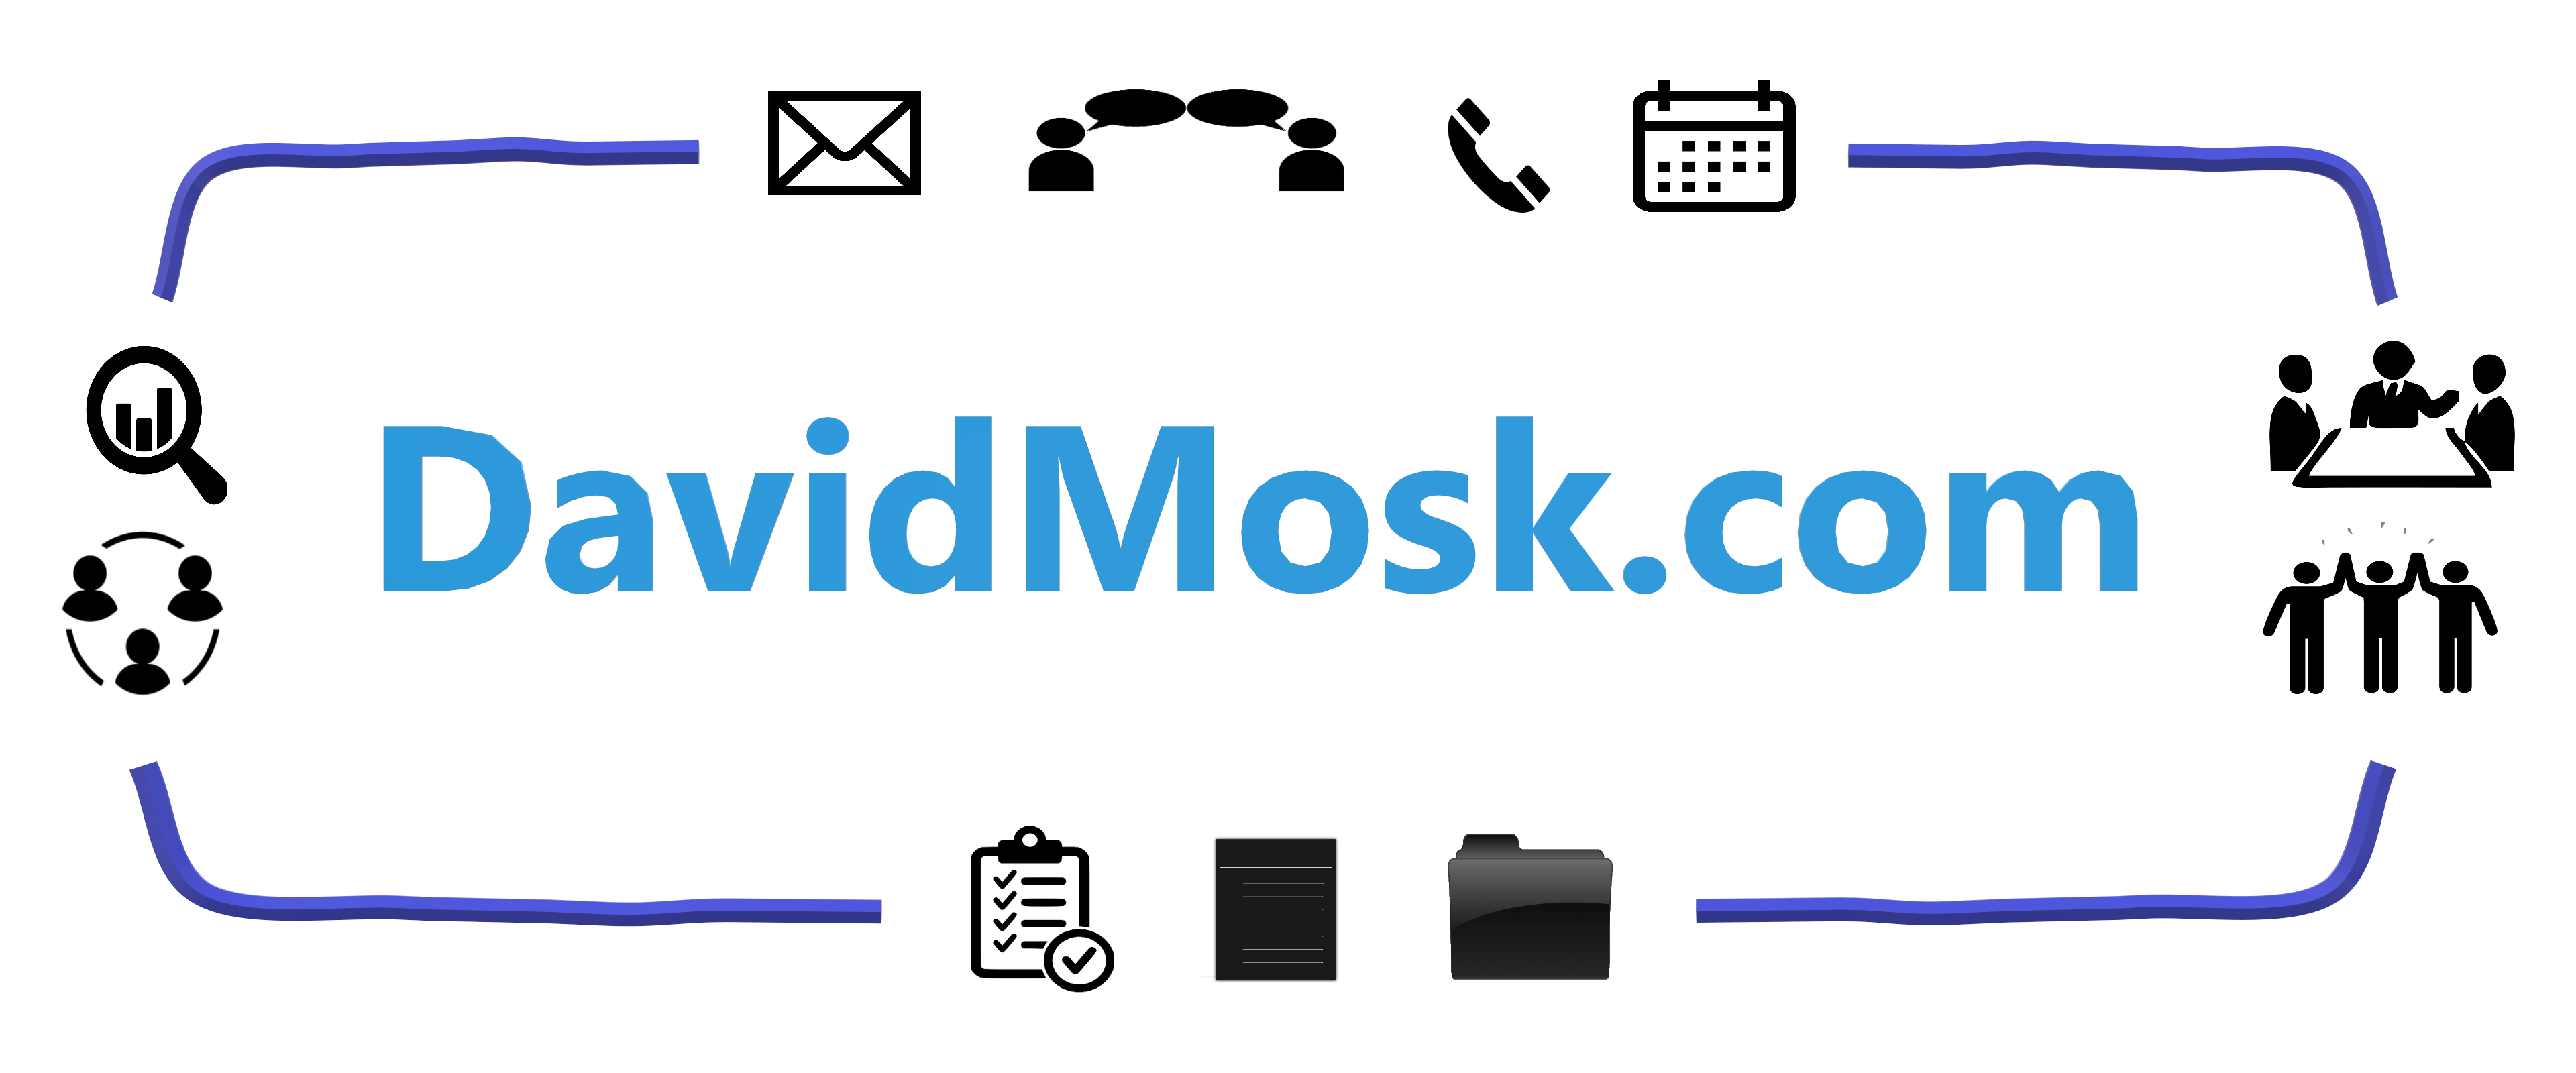 DavidMosk.com logo